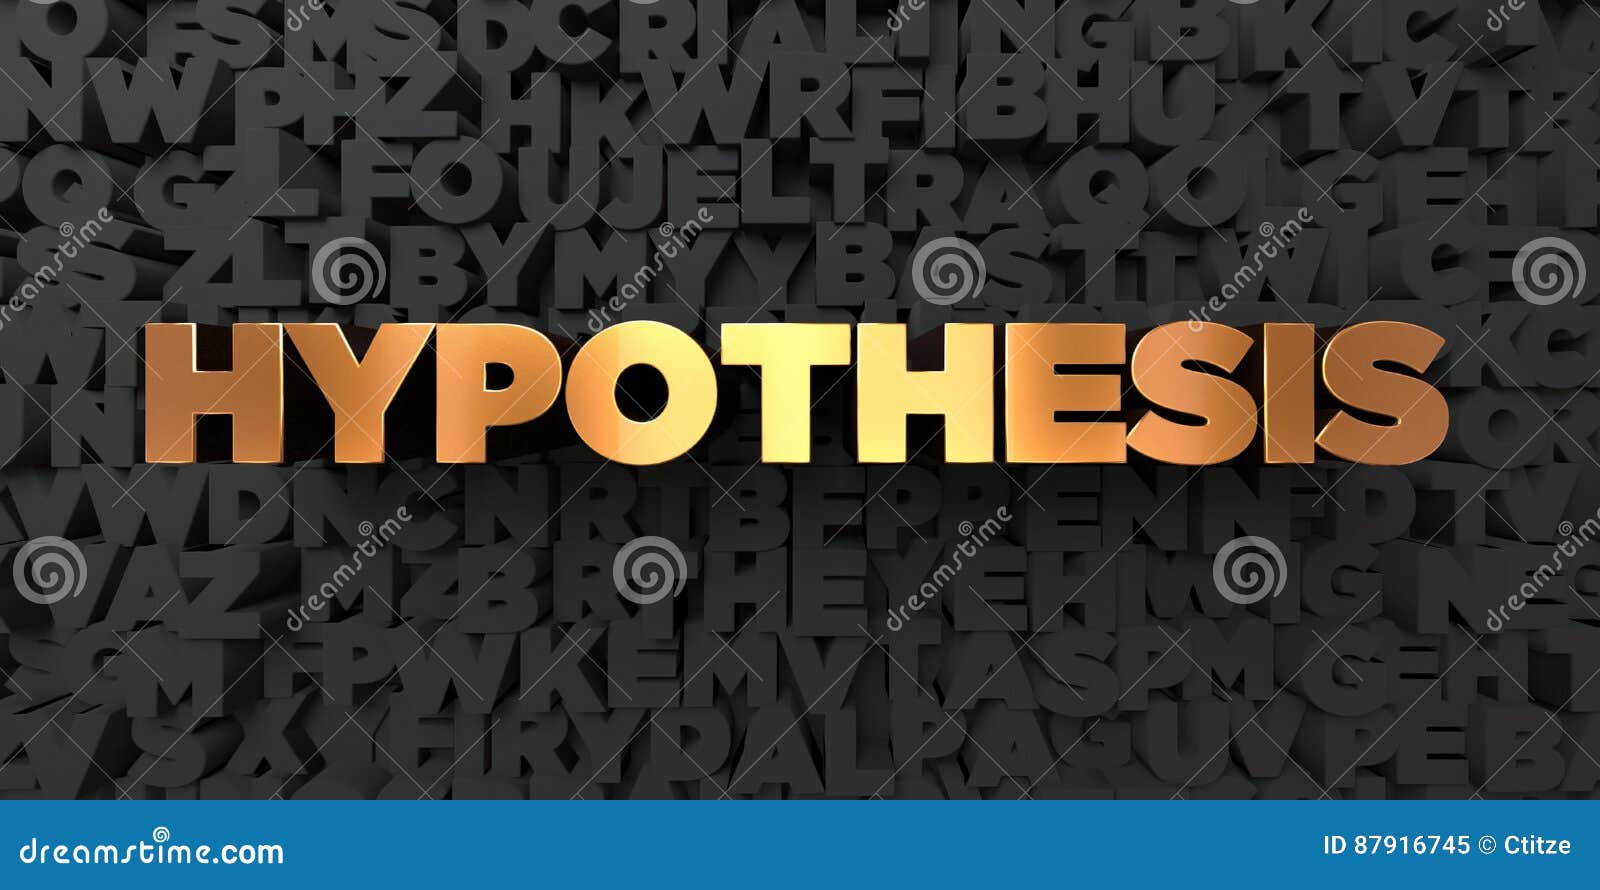 Hypotes